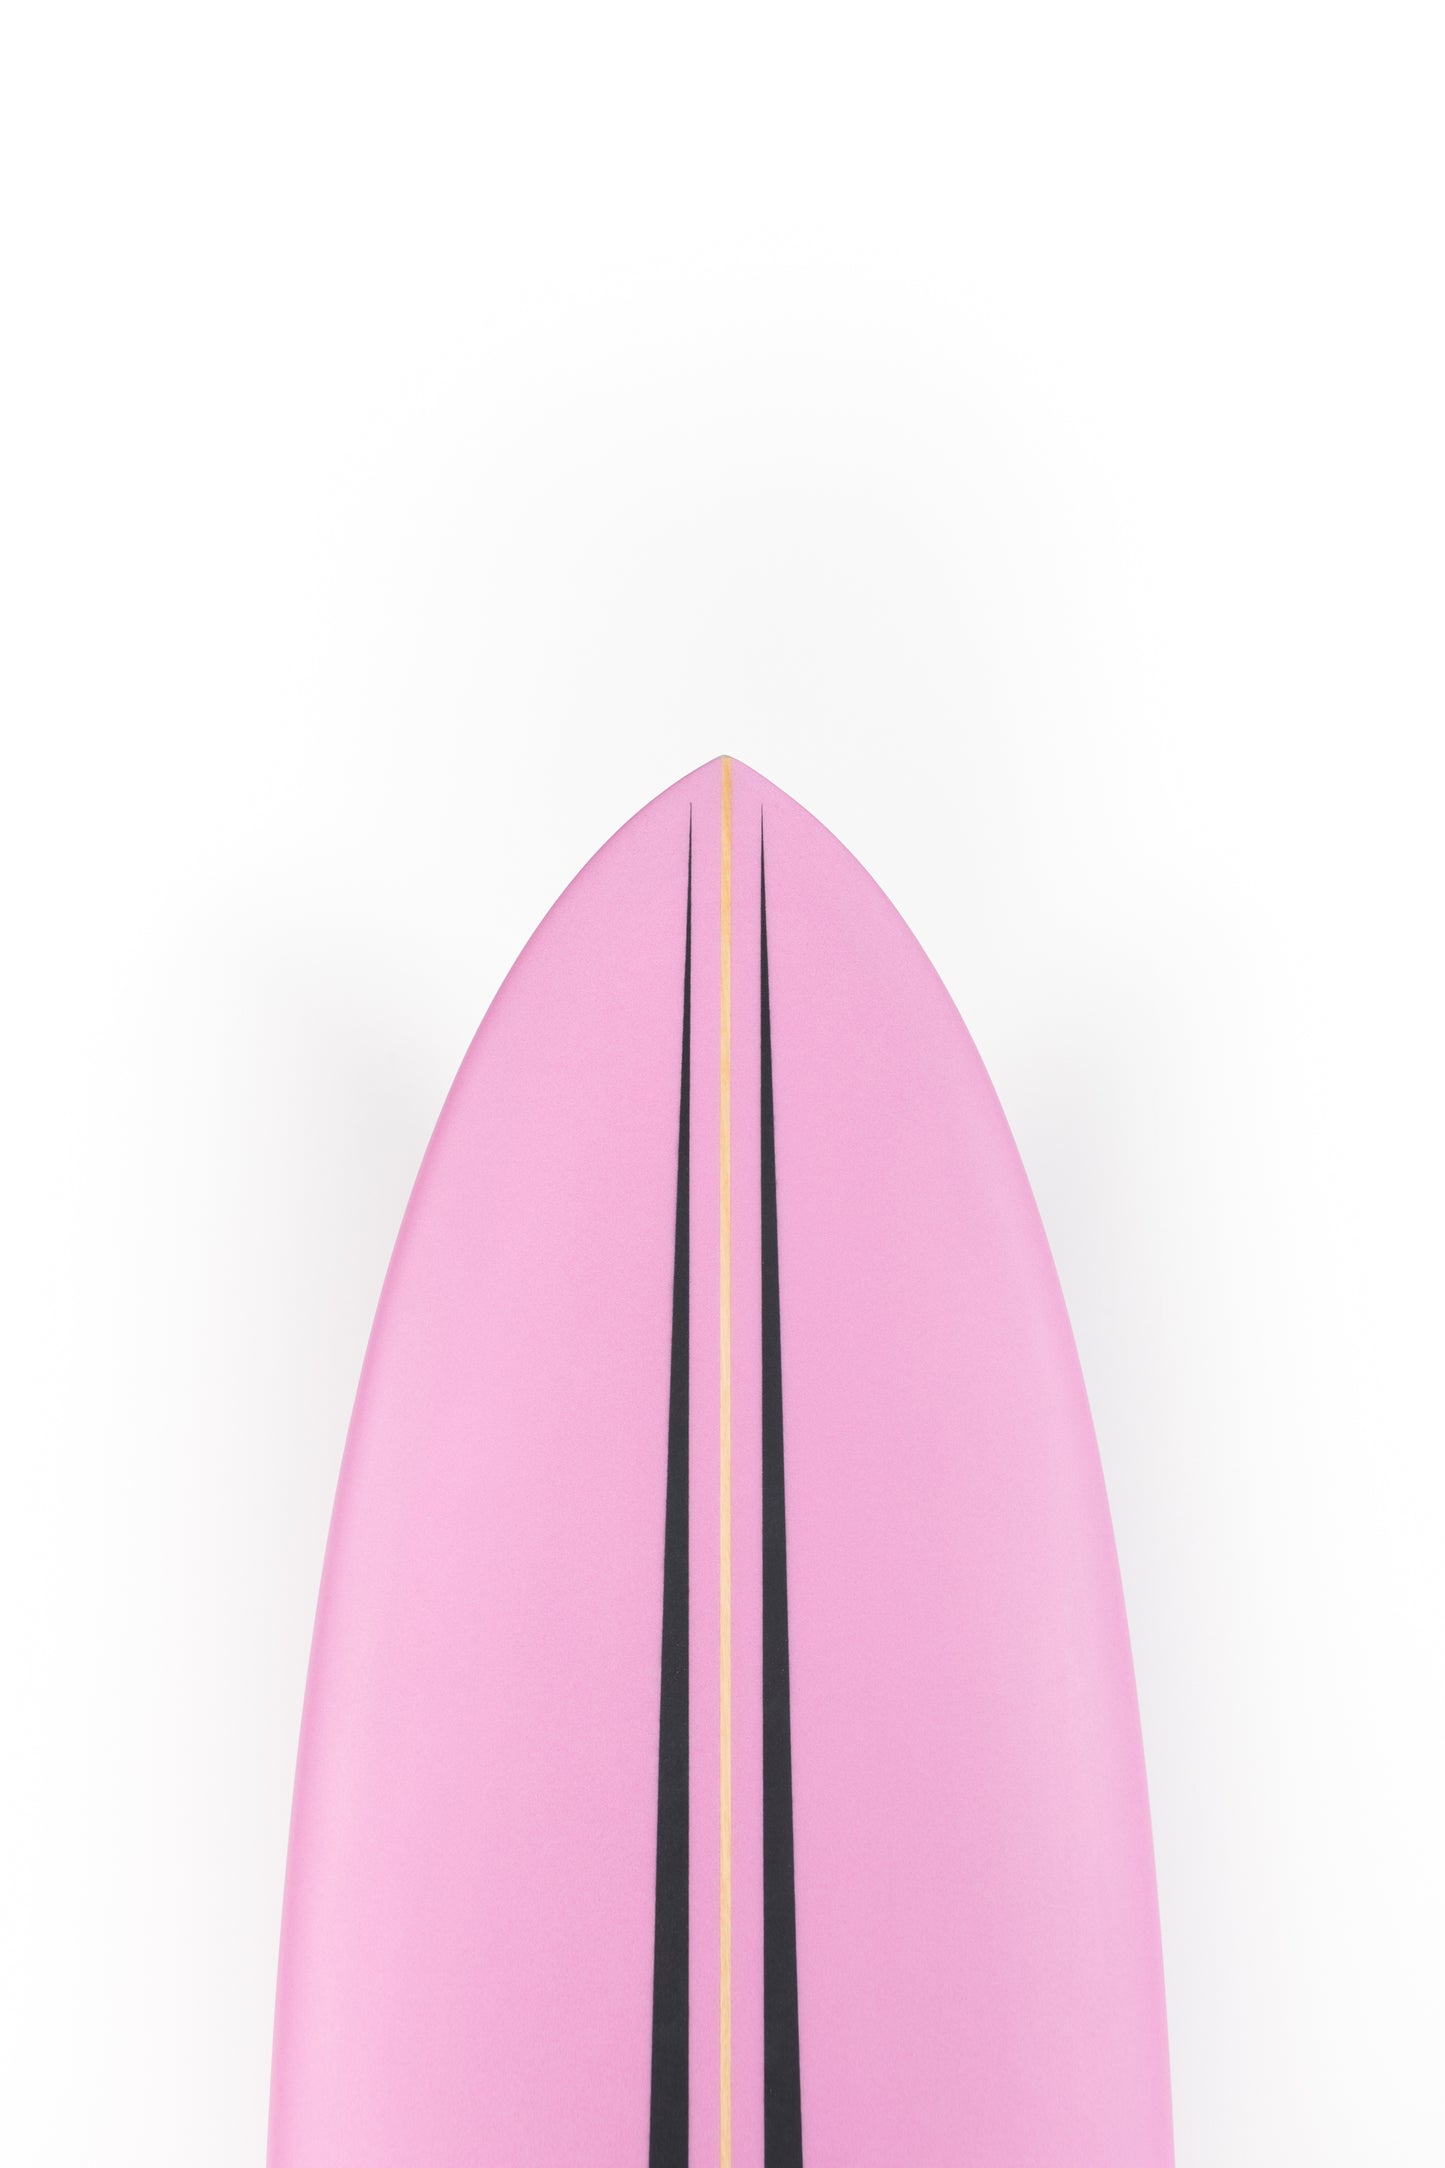 
                  
                    Pukas Surf Shop - Pukas Surfboard - LA CÔTE by Axel Lorentz - 6'9" x 21,31 x 2,91 - 45,62L -  AX08239
                  
                